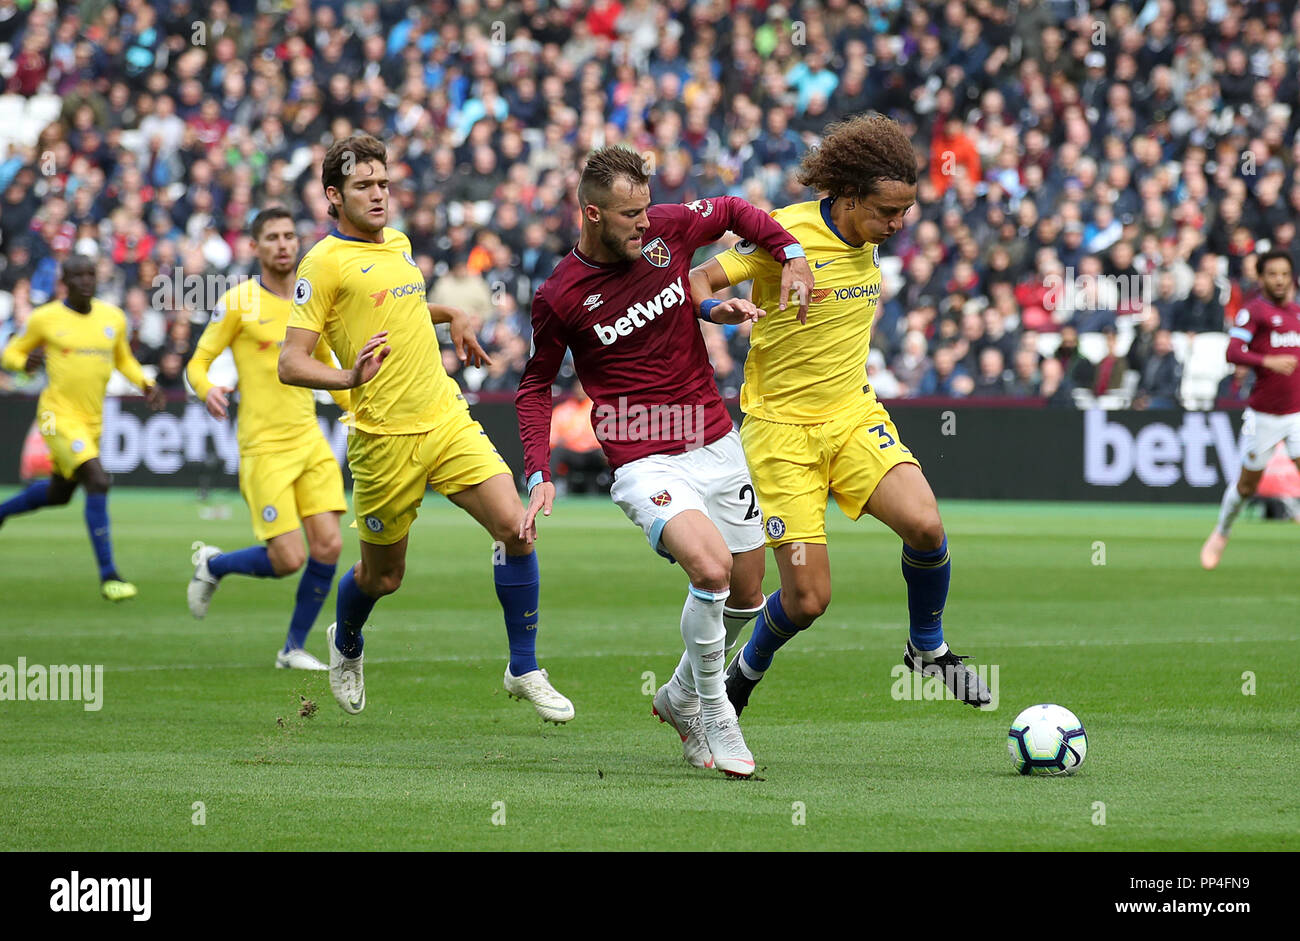 West Ham United's Andriy Yarmolenko (centre) et de Chelsea's David Luiz bataille pour la balle durant le match de Premier League stade de Londres. Banque D'Images